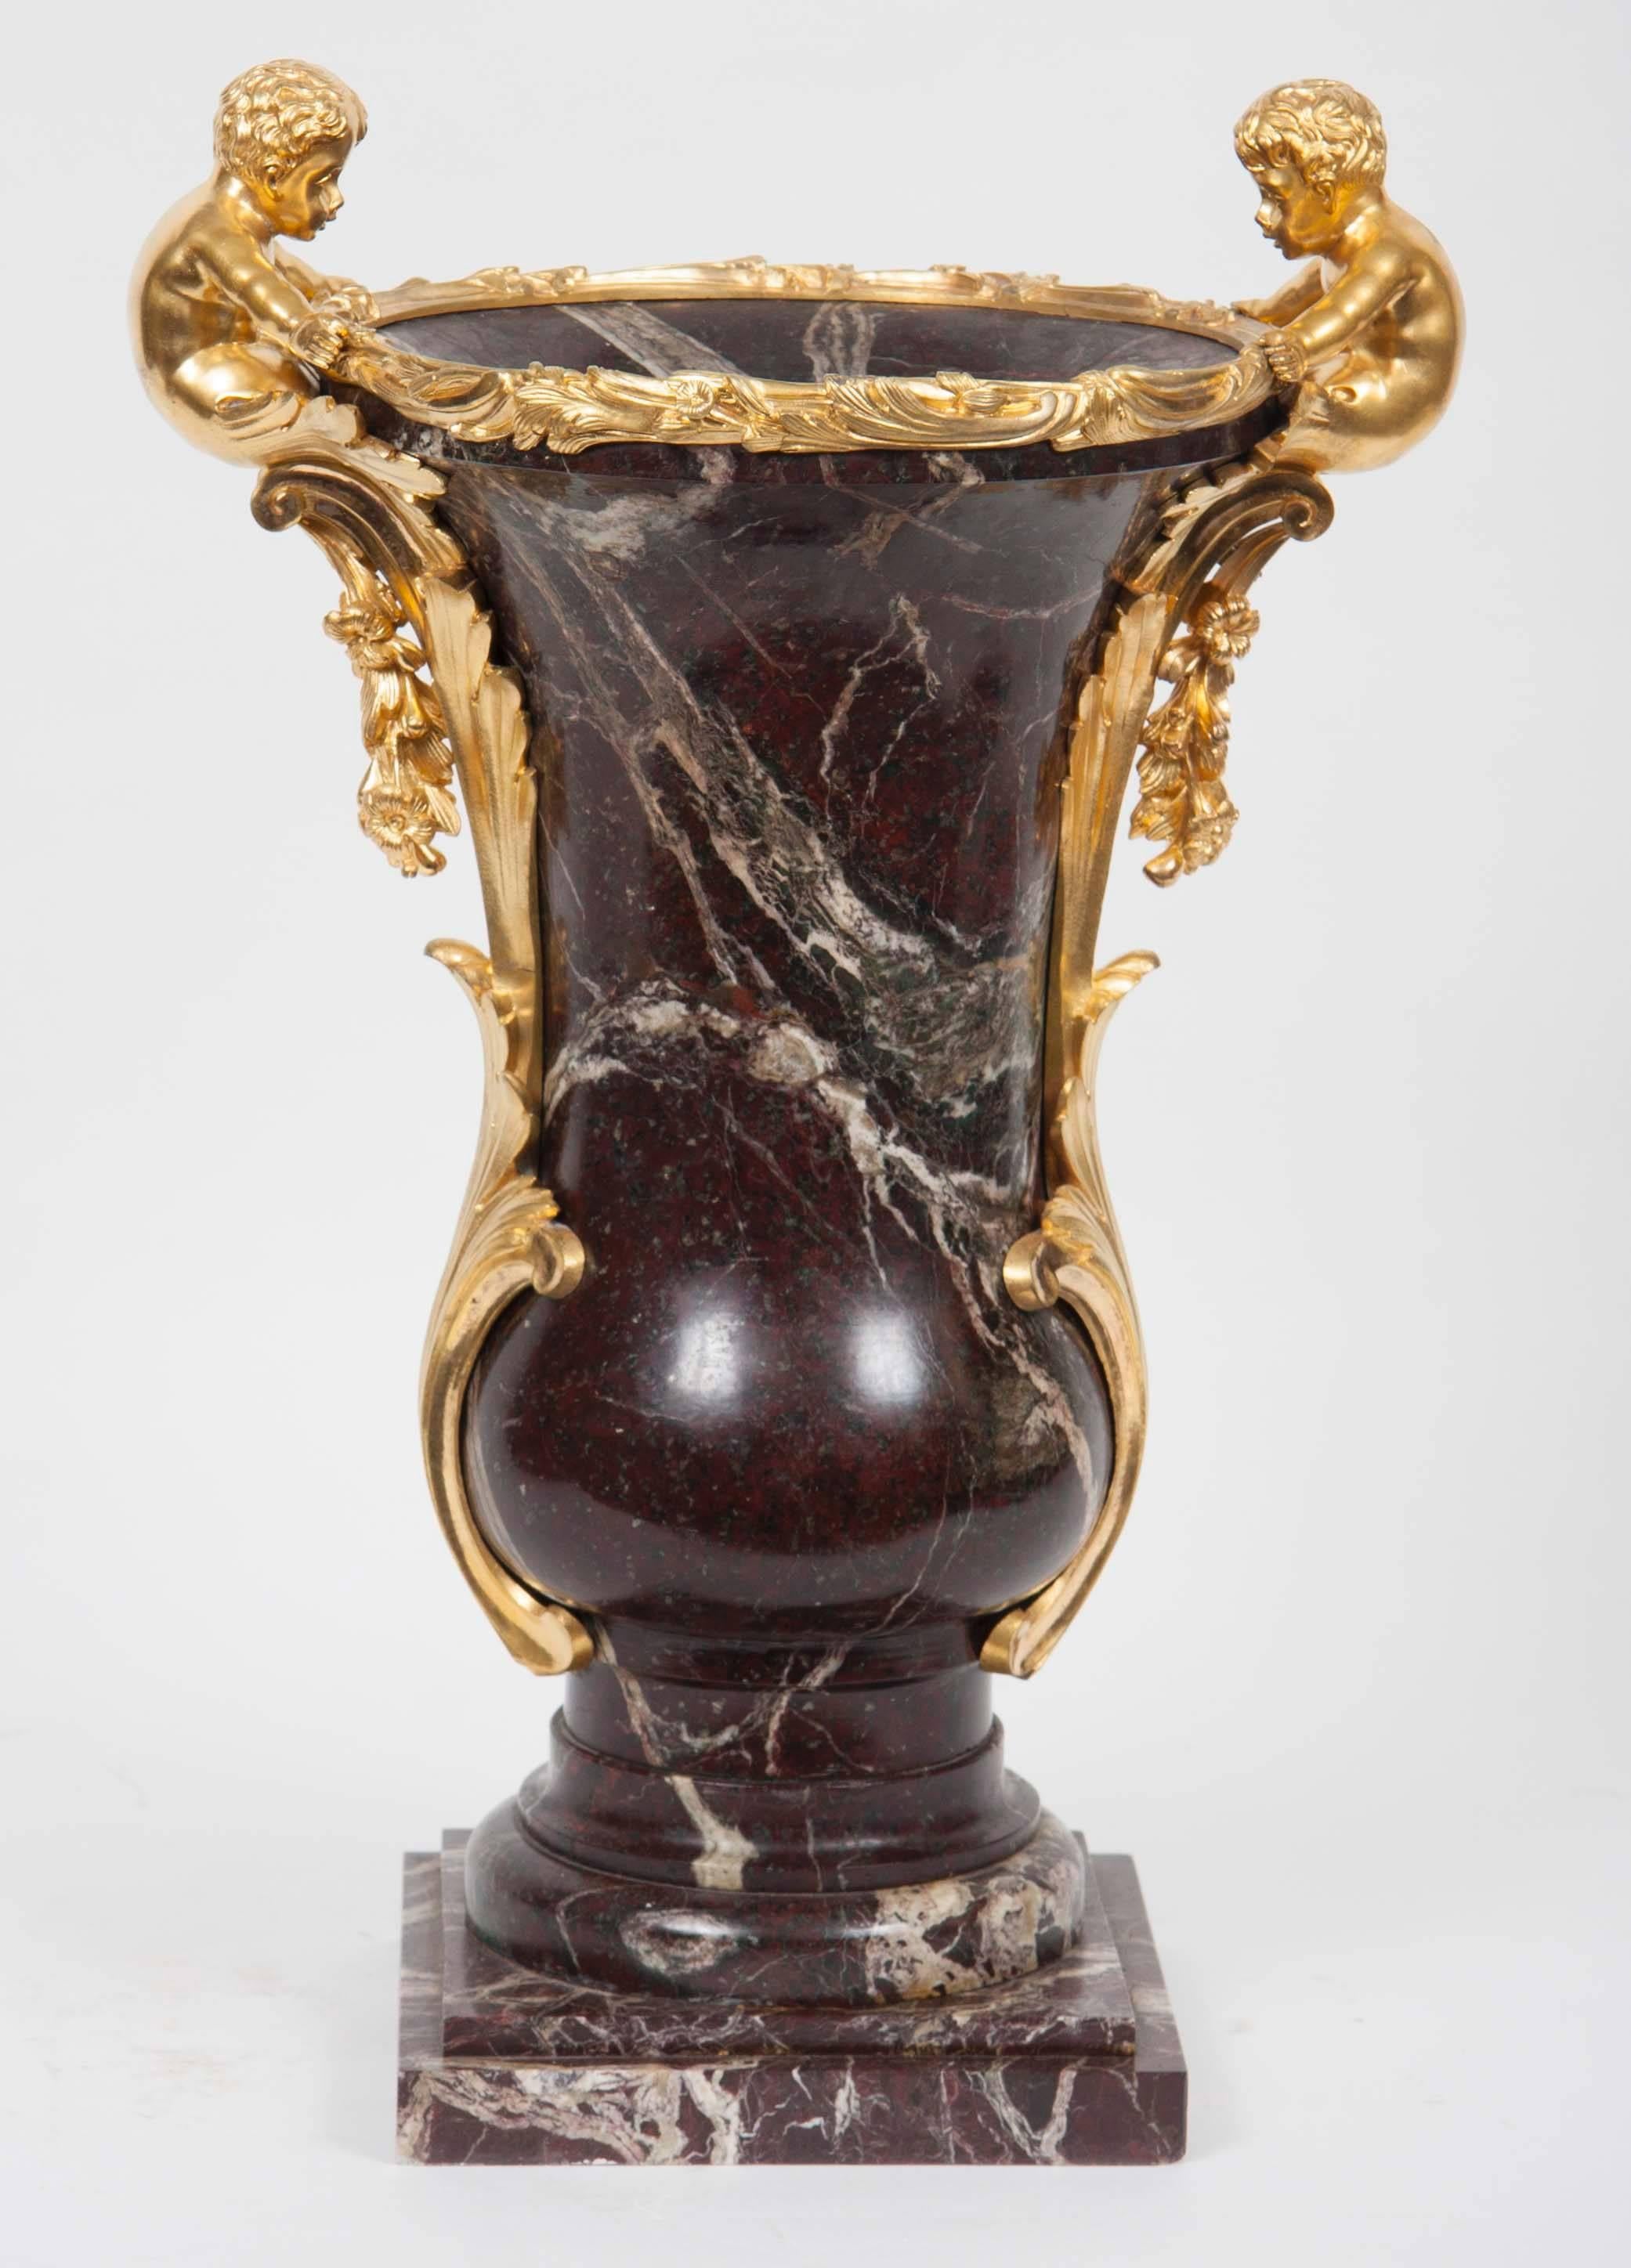 Paire de vases en marbre montés en bronze doré avec des feuilles de bronze doré ornées et des montures figuratives encadrant les urnes.
France, 19ème siècle.
Mesures : 52 cm de hauteur.

NMA Inv. 454